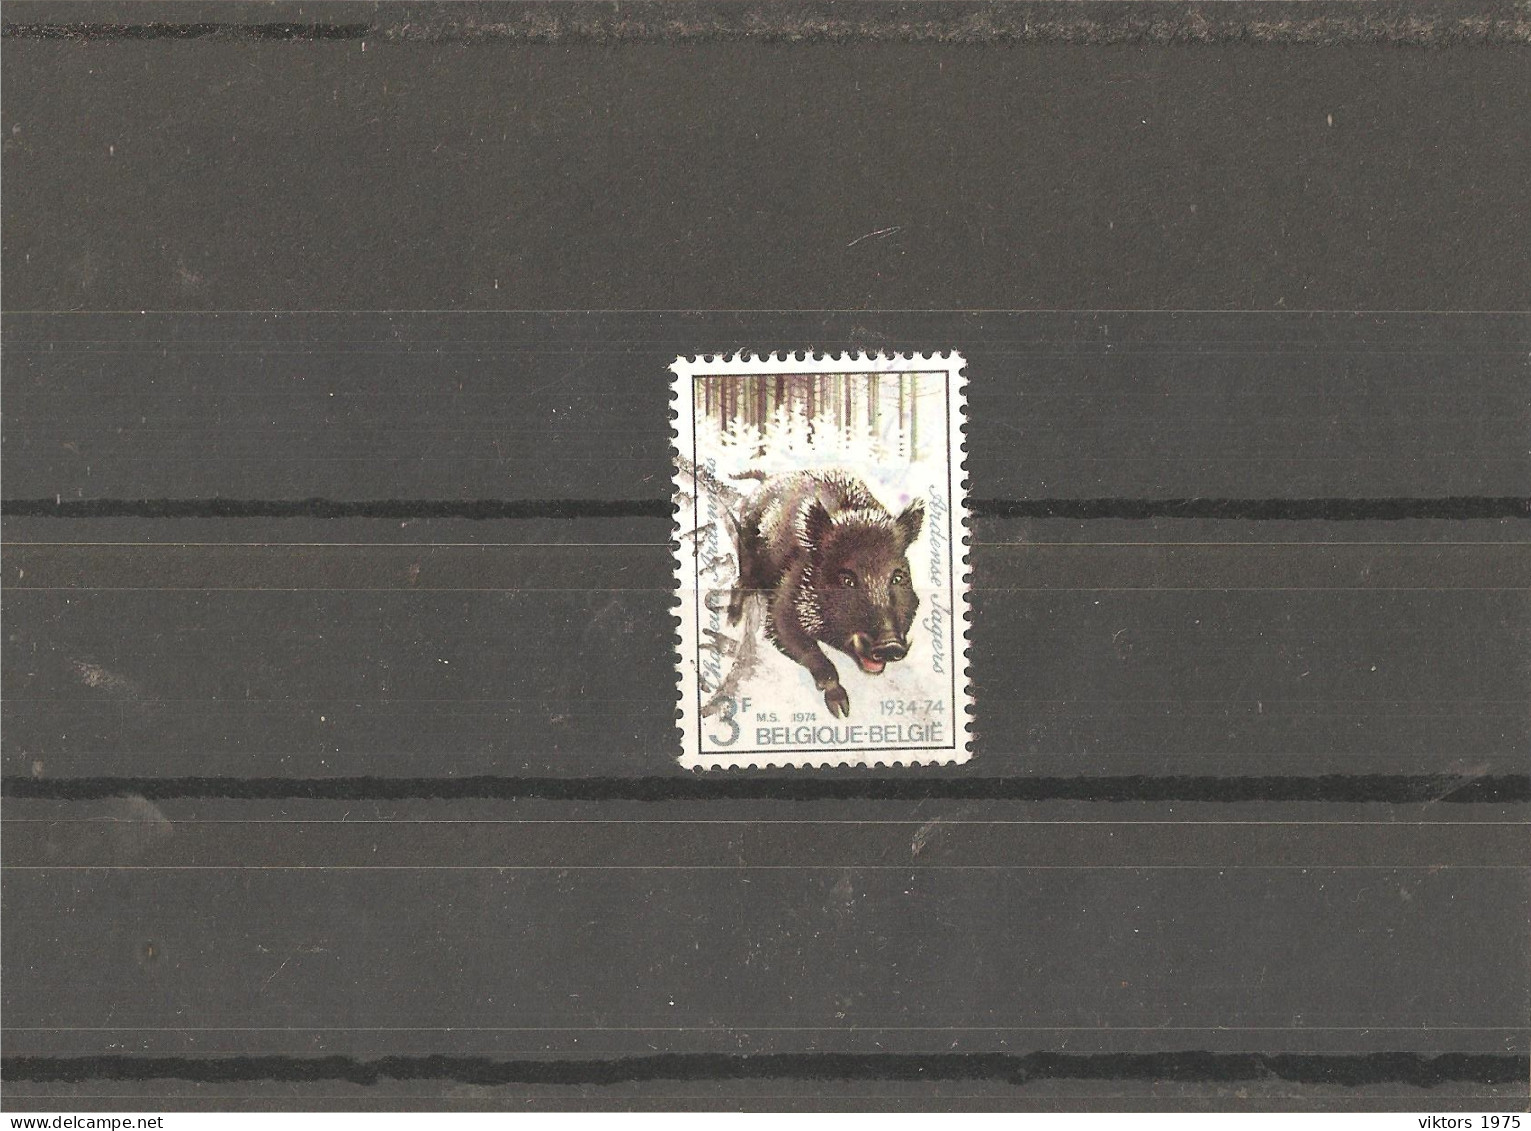 Used Stamp Nr.1785 In MICHEL Catalog - Usati